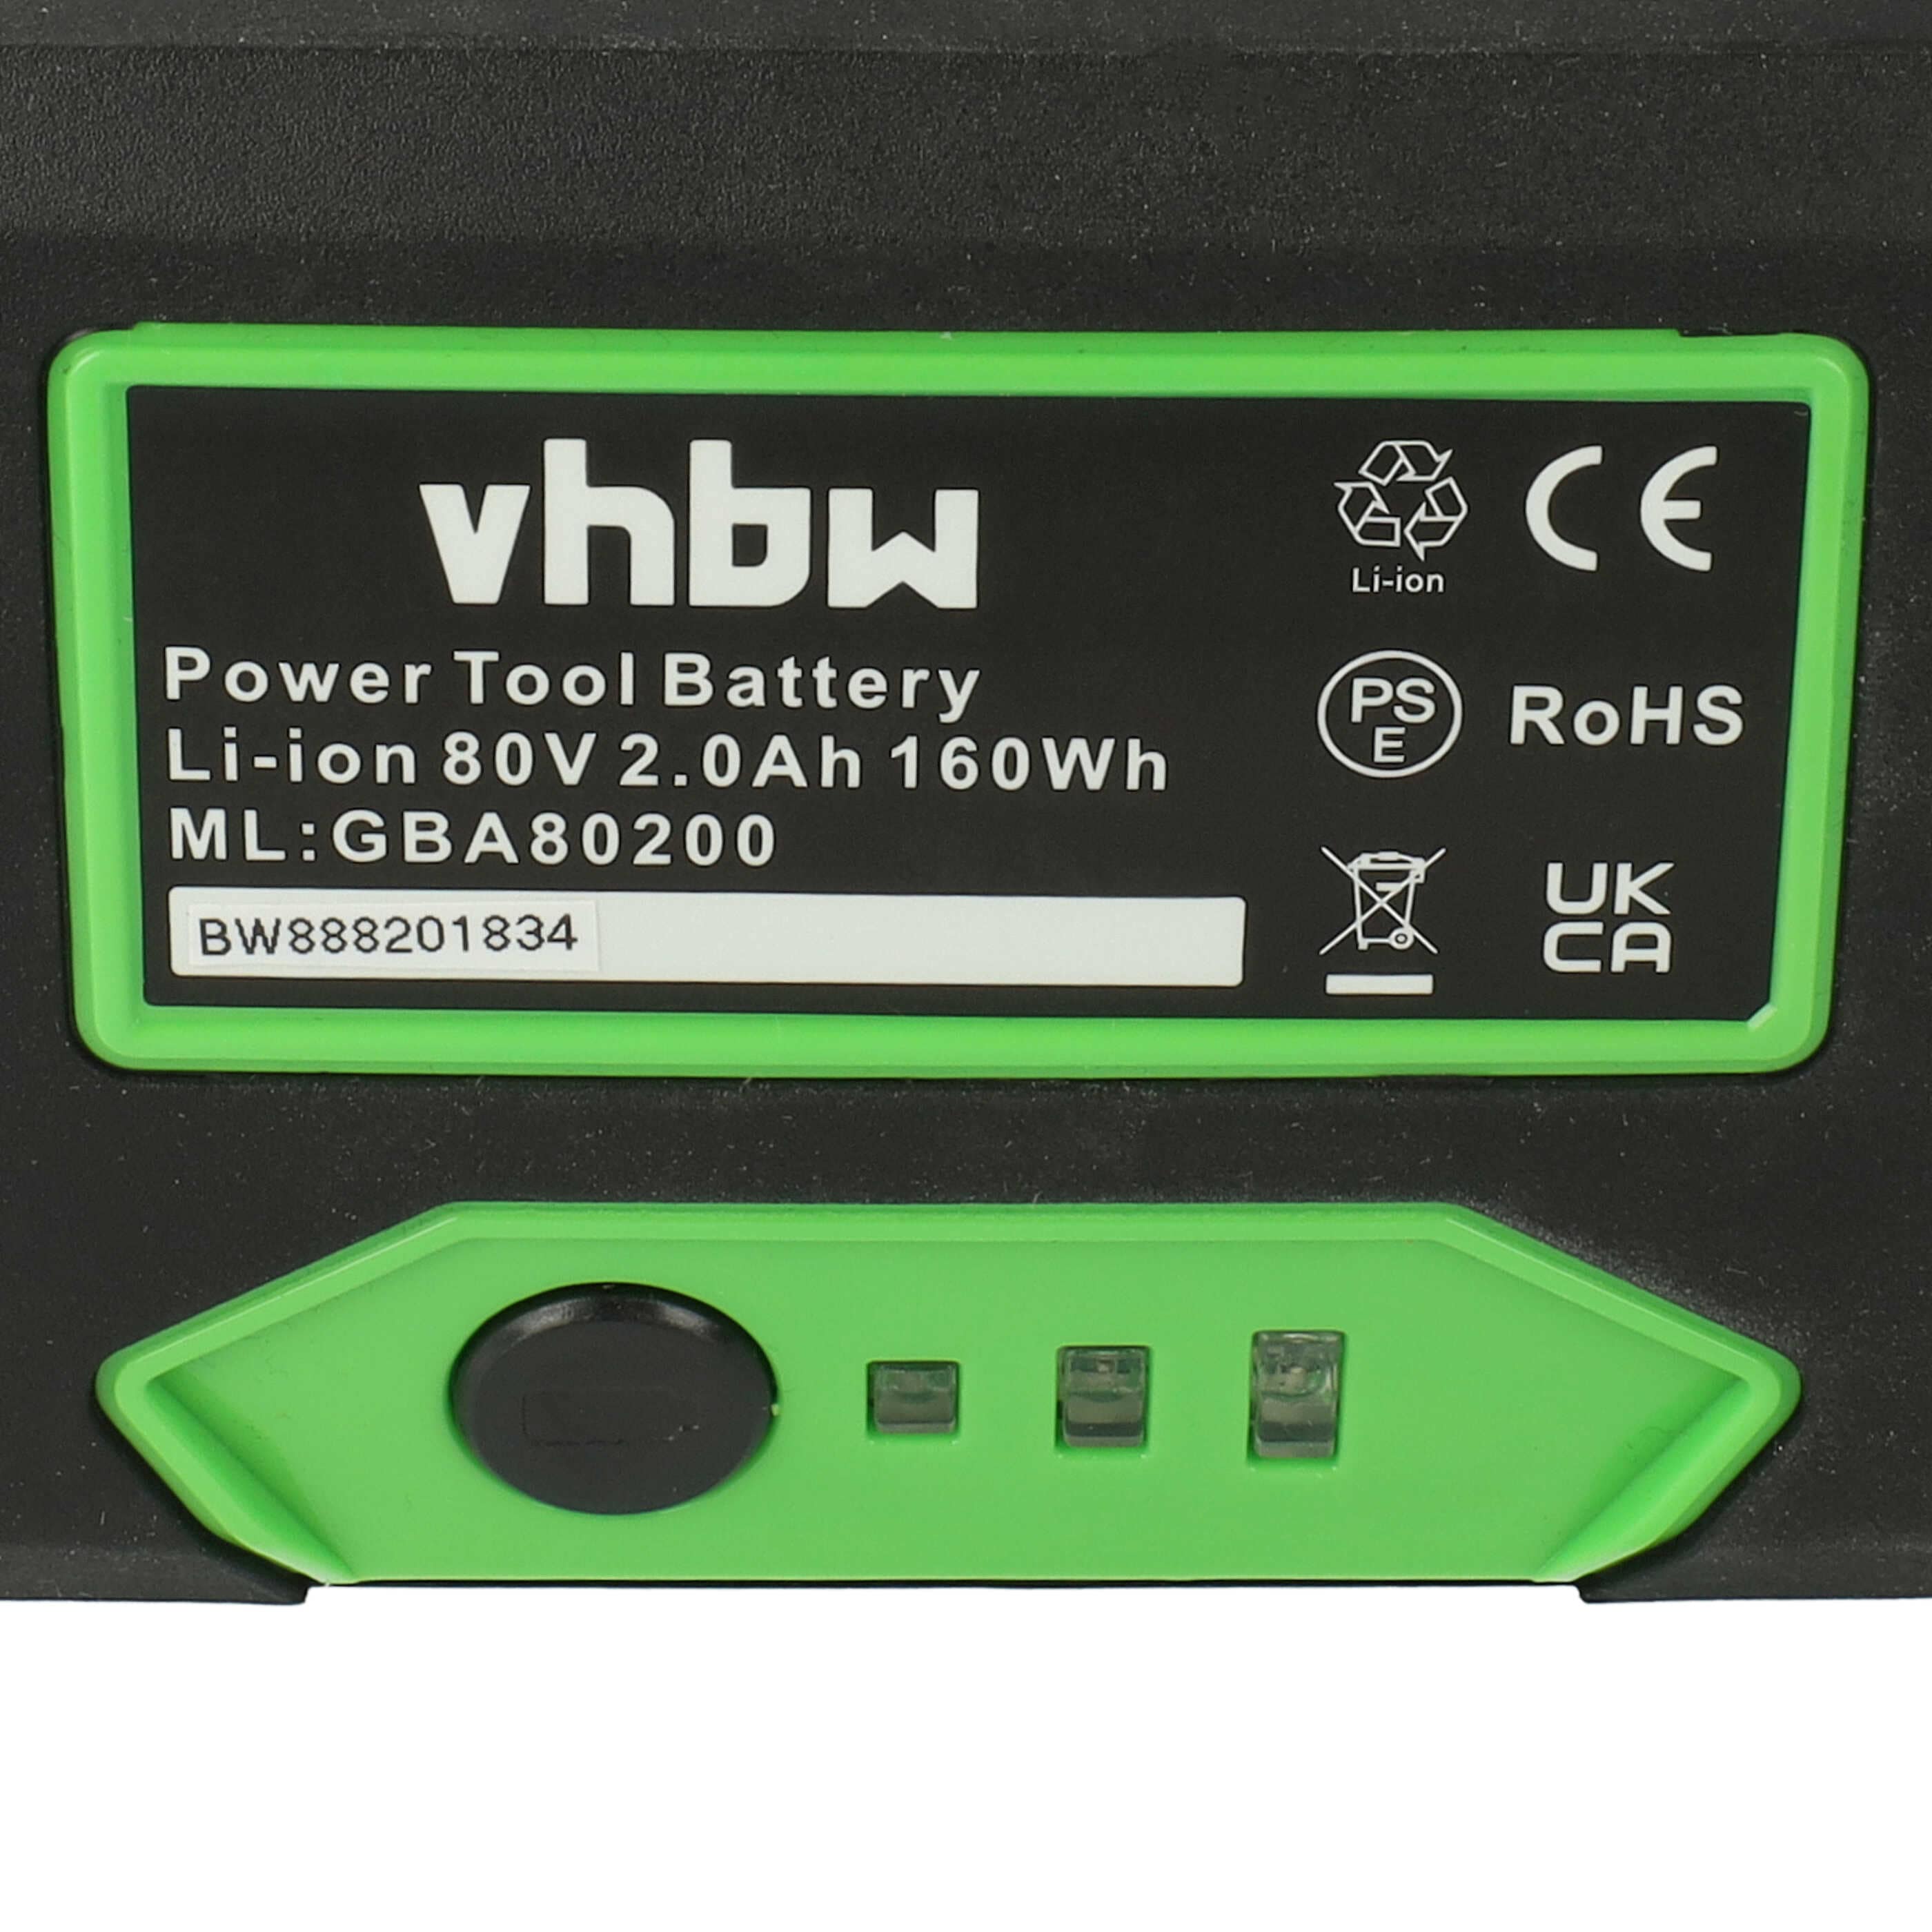 Batterie remplace Greenworks 2901307, GBA80200, G80B4, 2902407 pour outil de jardinage - 2000mAh 80V Li-ion